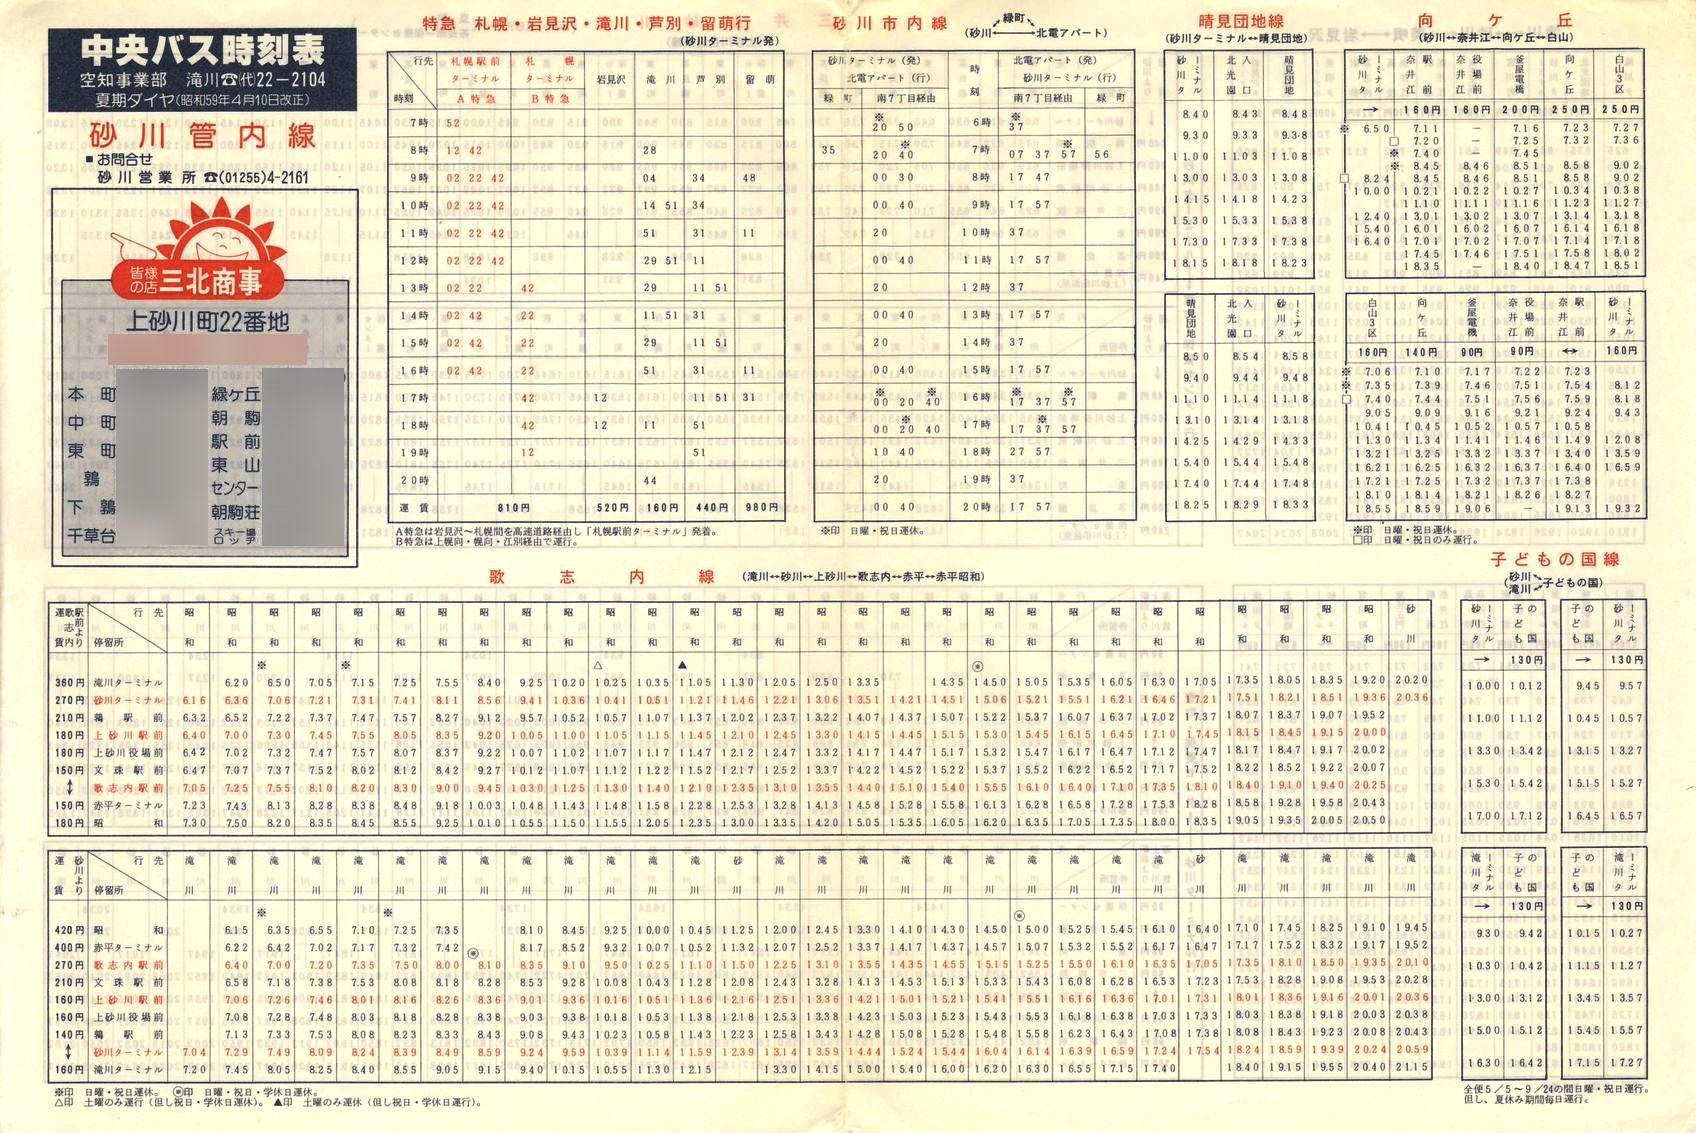 1984-04-10改正_北海道中央バス(空知)_砂川管内線時刻表表面